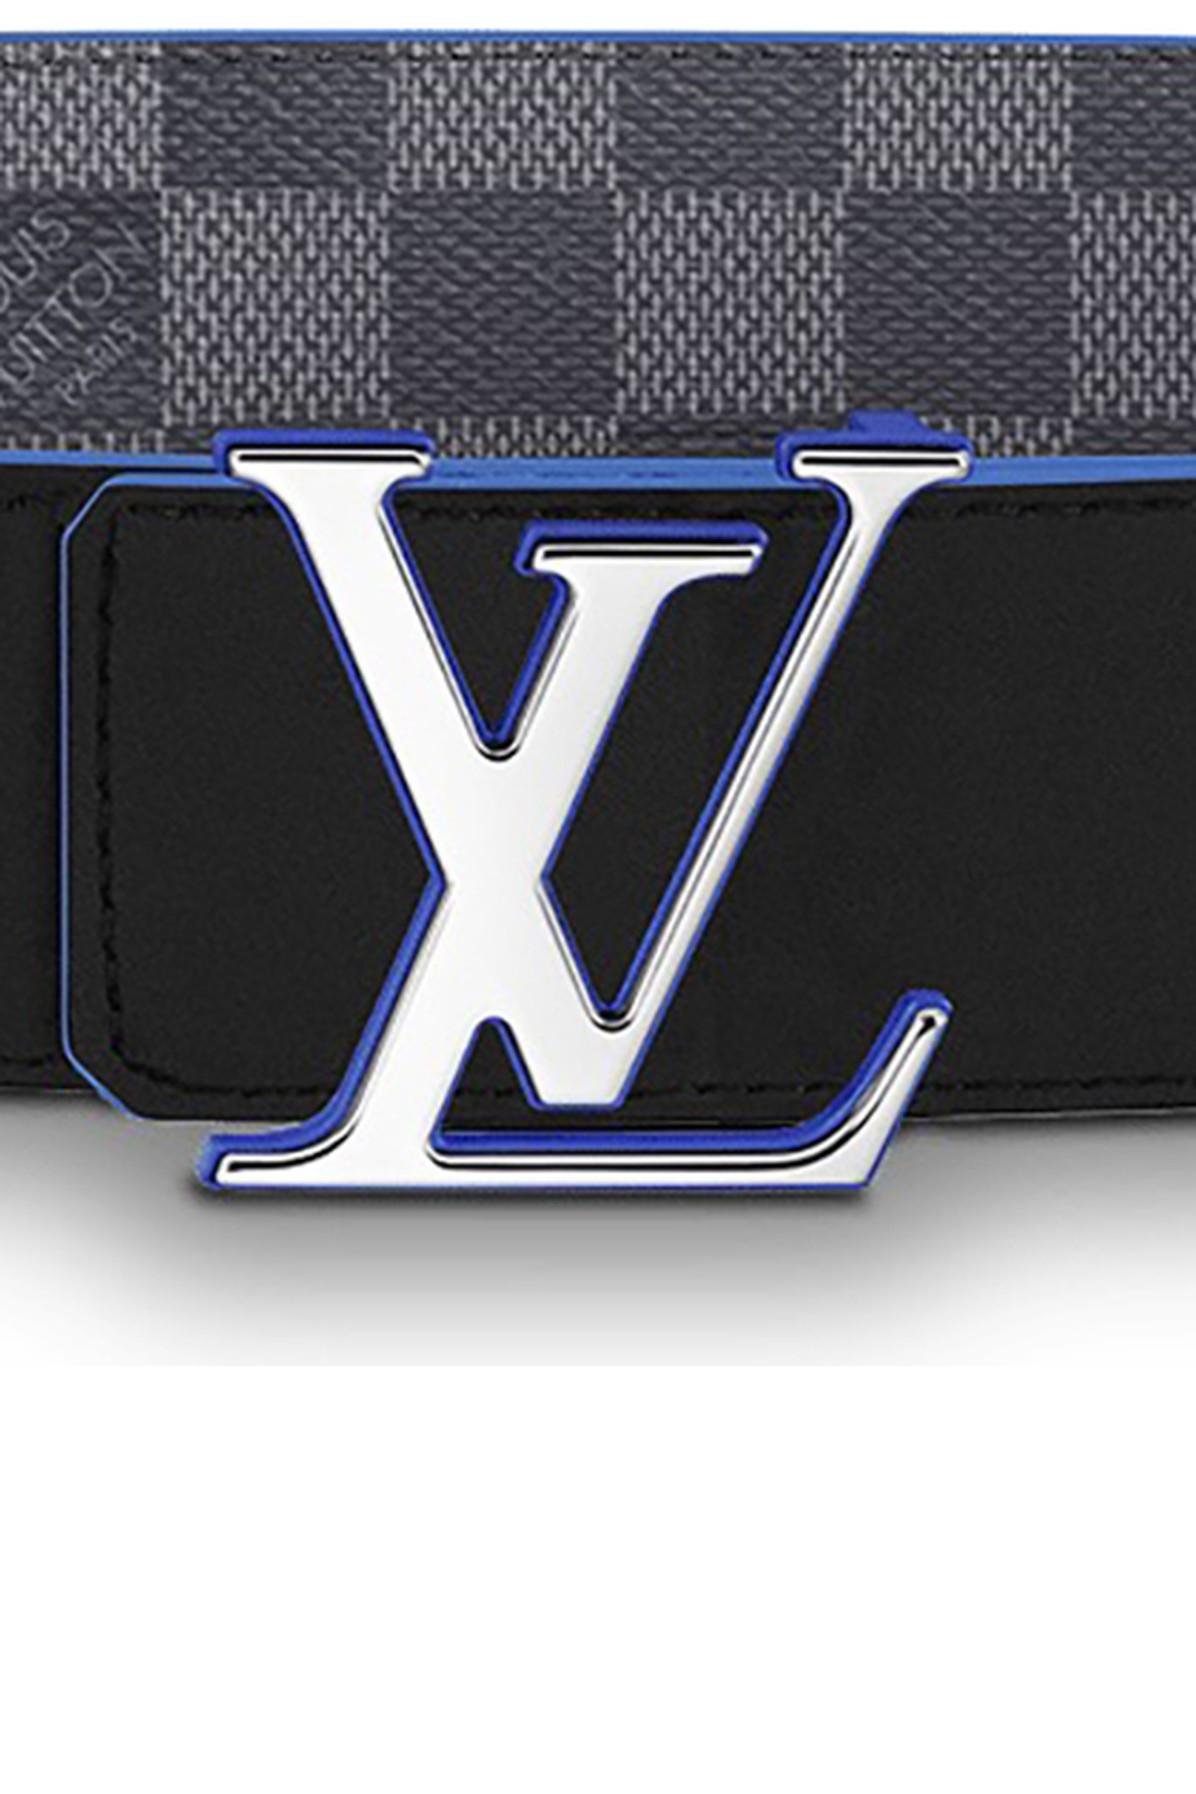 Louis Vuitton Damier LV Initiales Reversible Belt